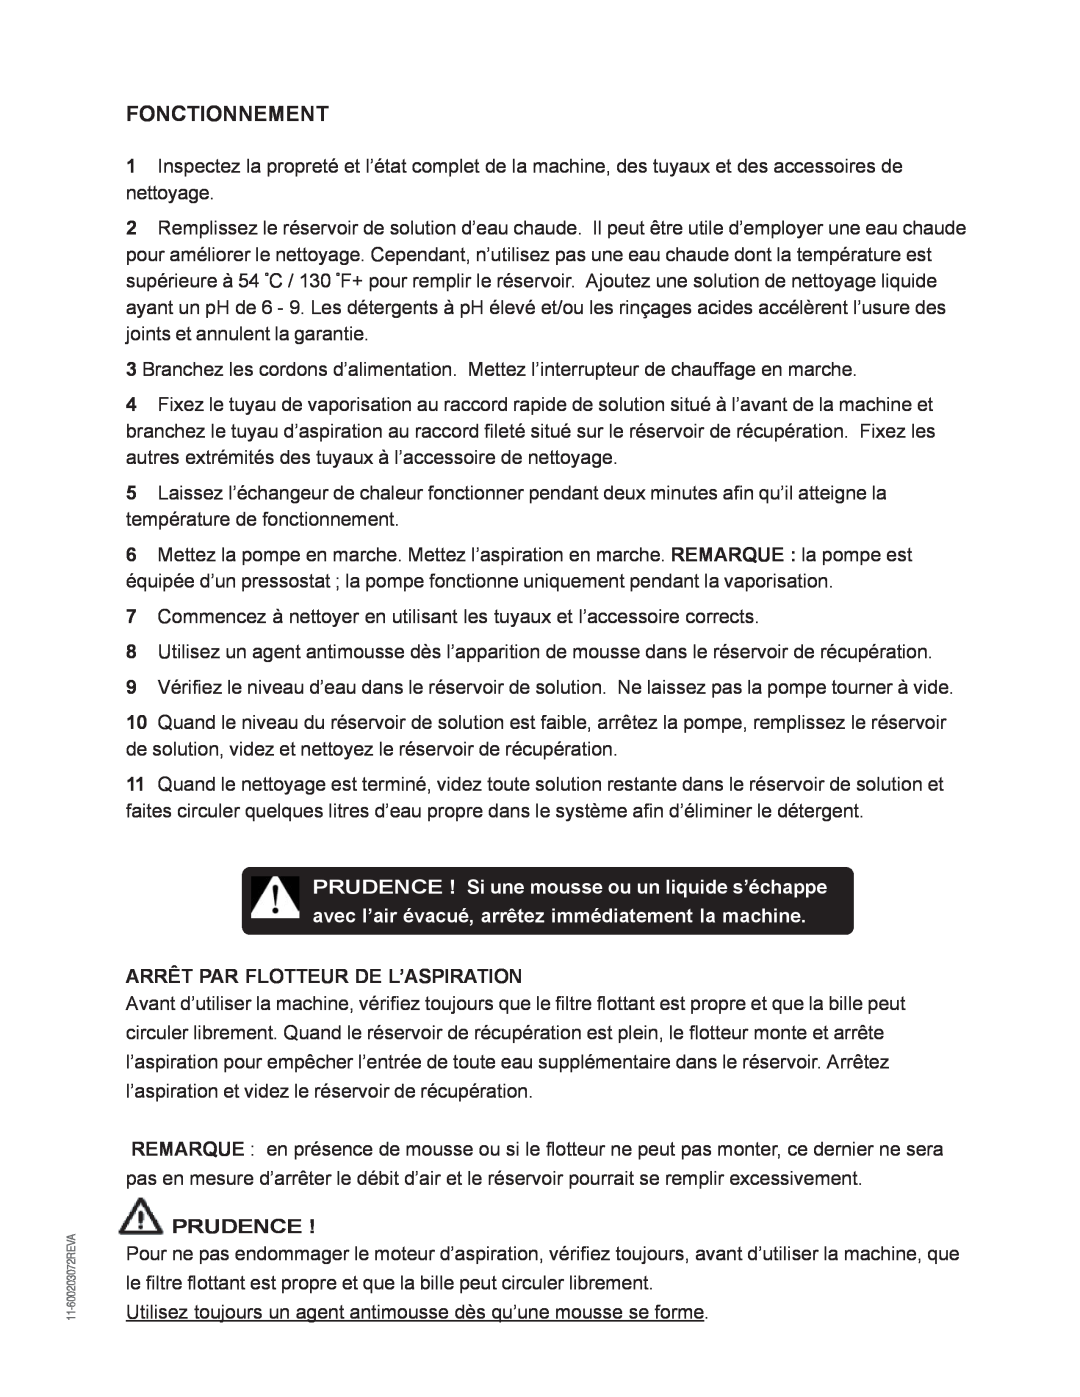 Nilfisk-Advance America MX 307 H instruction manual Fonctionnement, Arrêt Par Flotteur De L’Aspiration, Prudence 